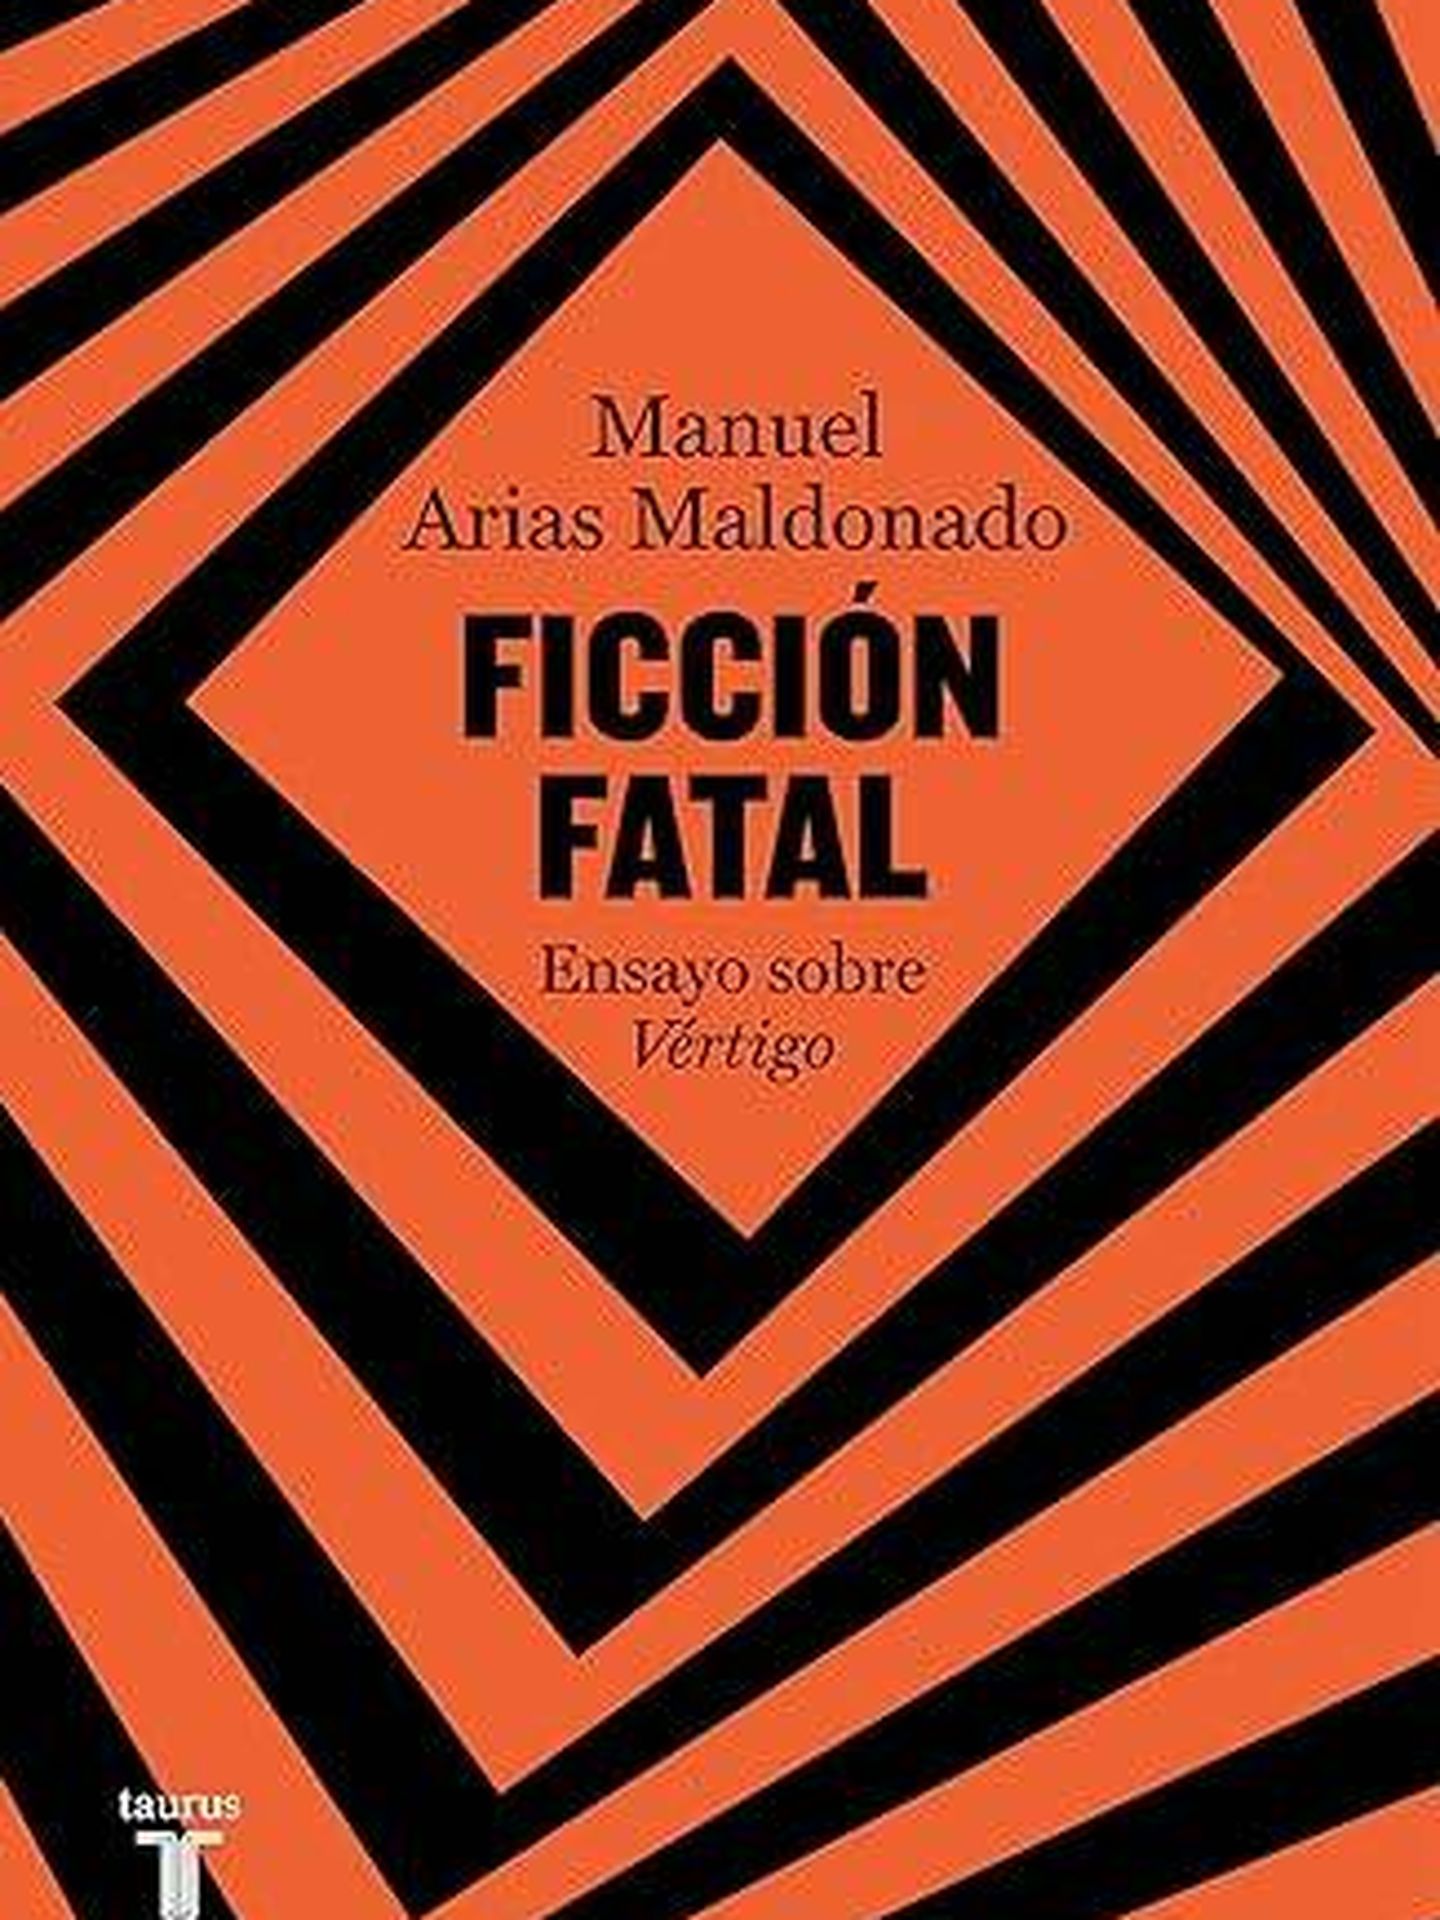 Portada de 'Ficción fatal', el ensayo de Manuel Arias Maldonado sobre 'Vértigo'. 